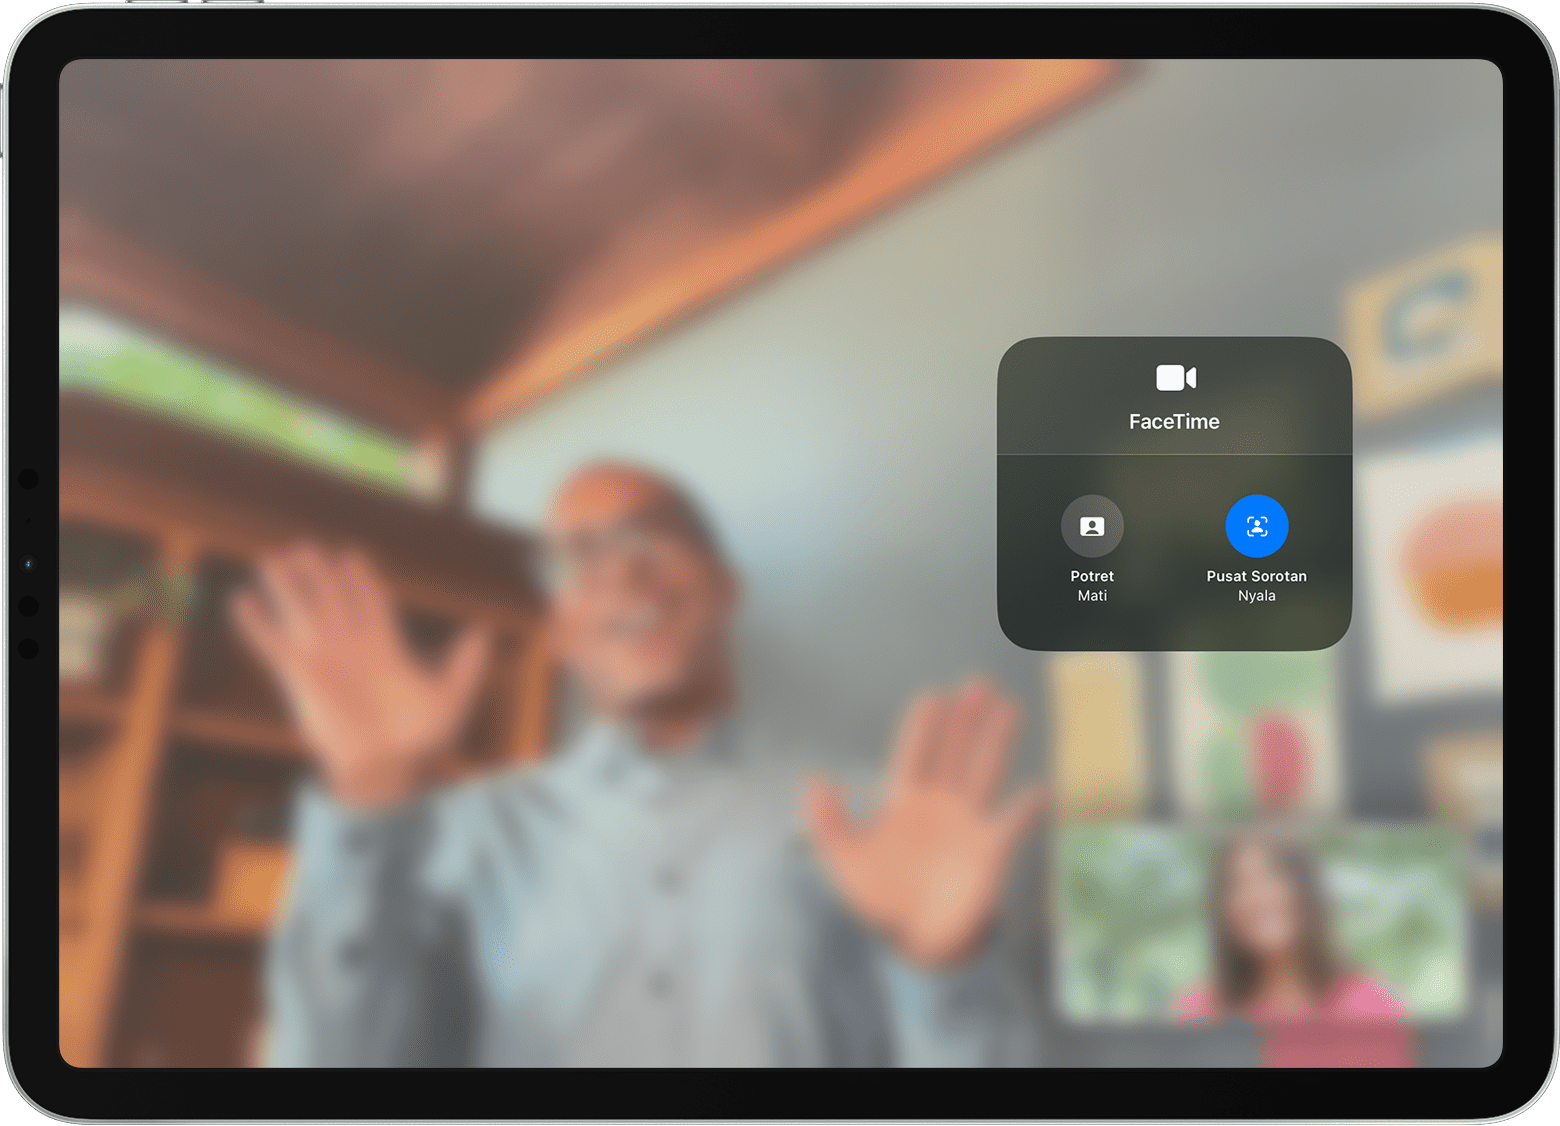 Layar iPad menampilkan panggilan FaceTime dengan pilihan Efek Video yang terlihat